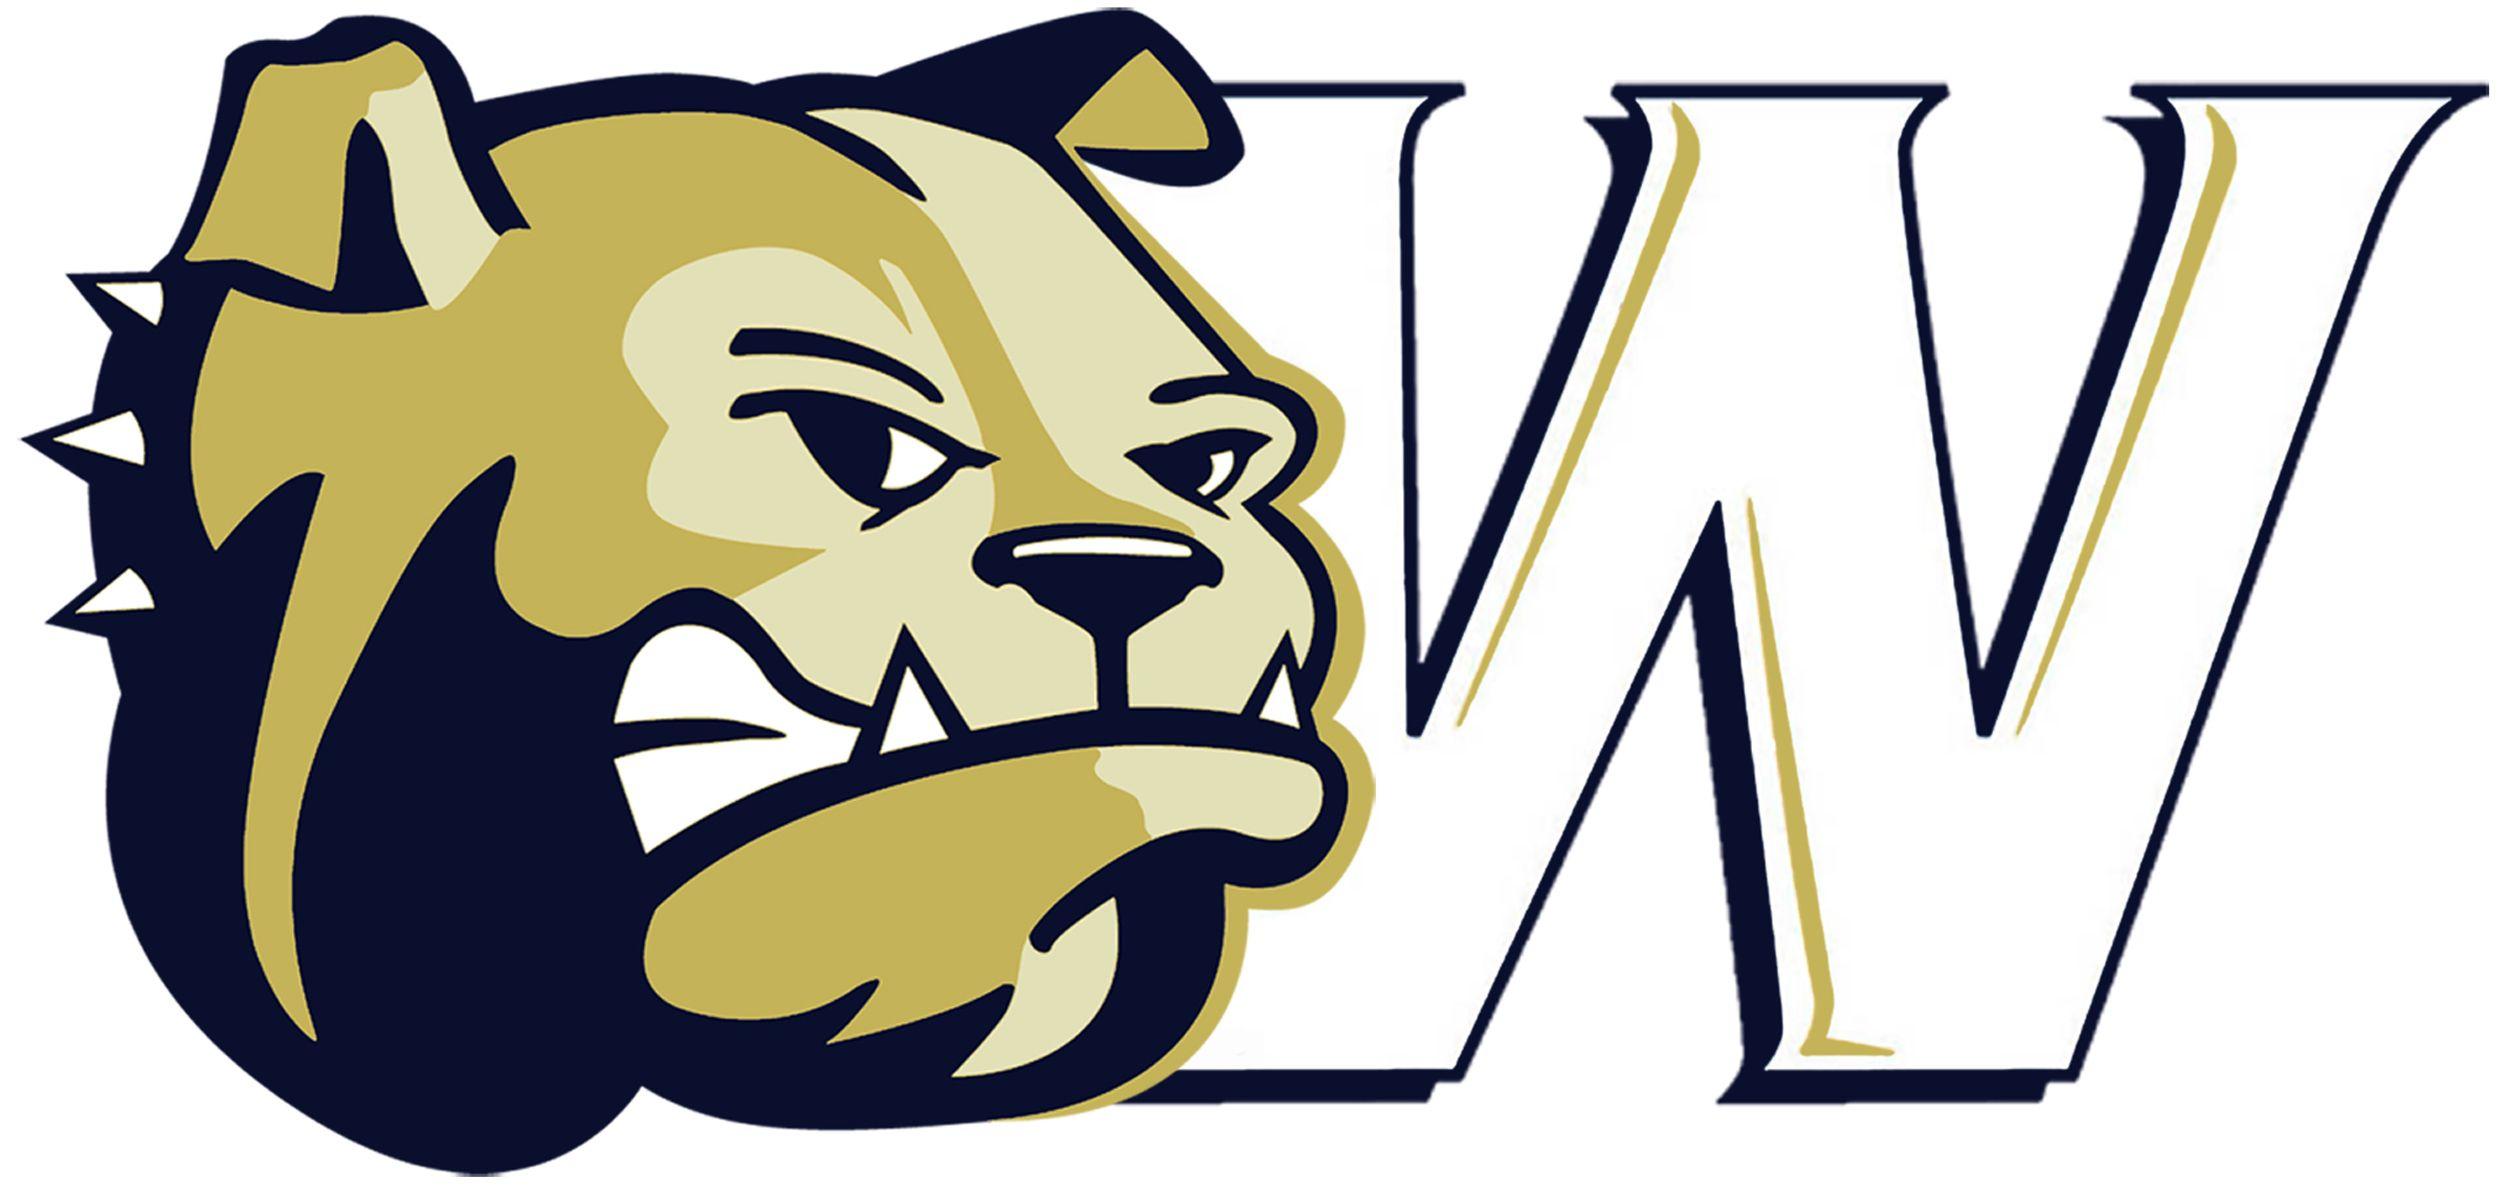 Wingate Logo - Athletic Communications University Athletics